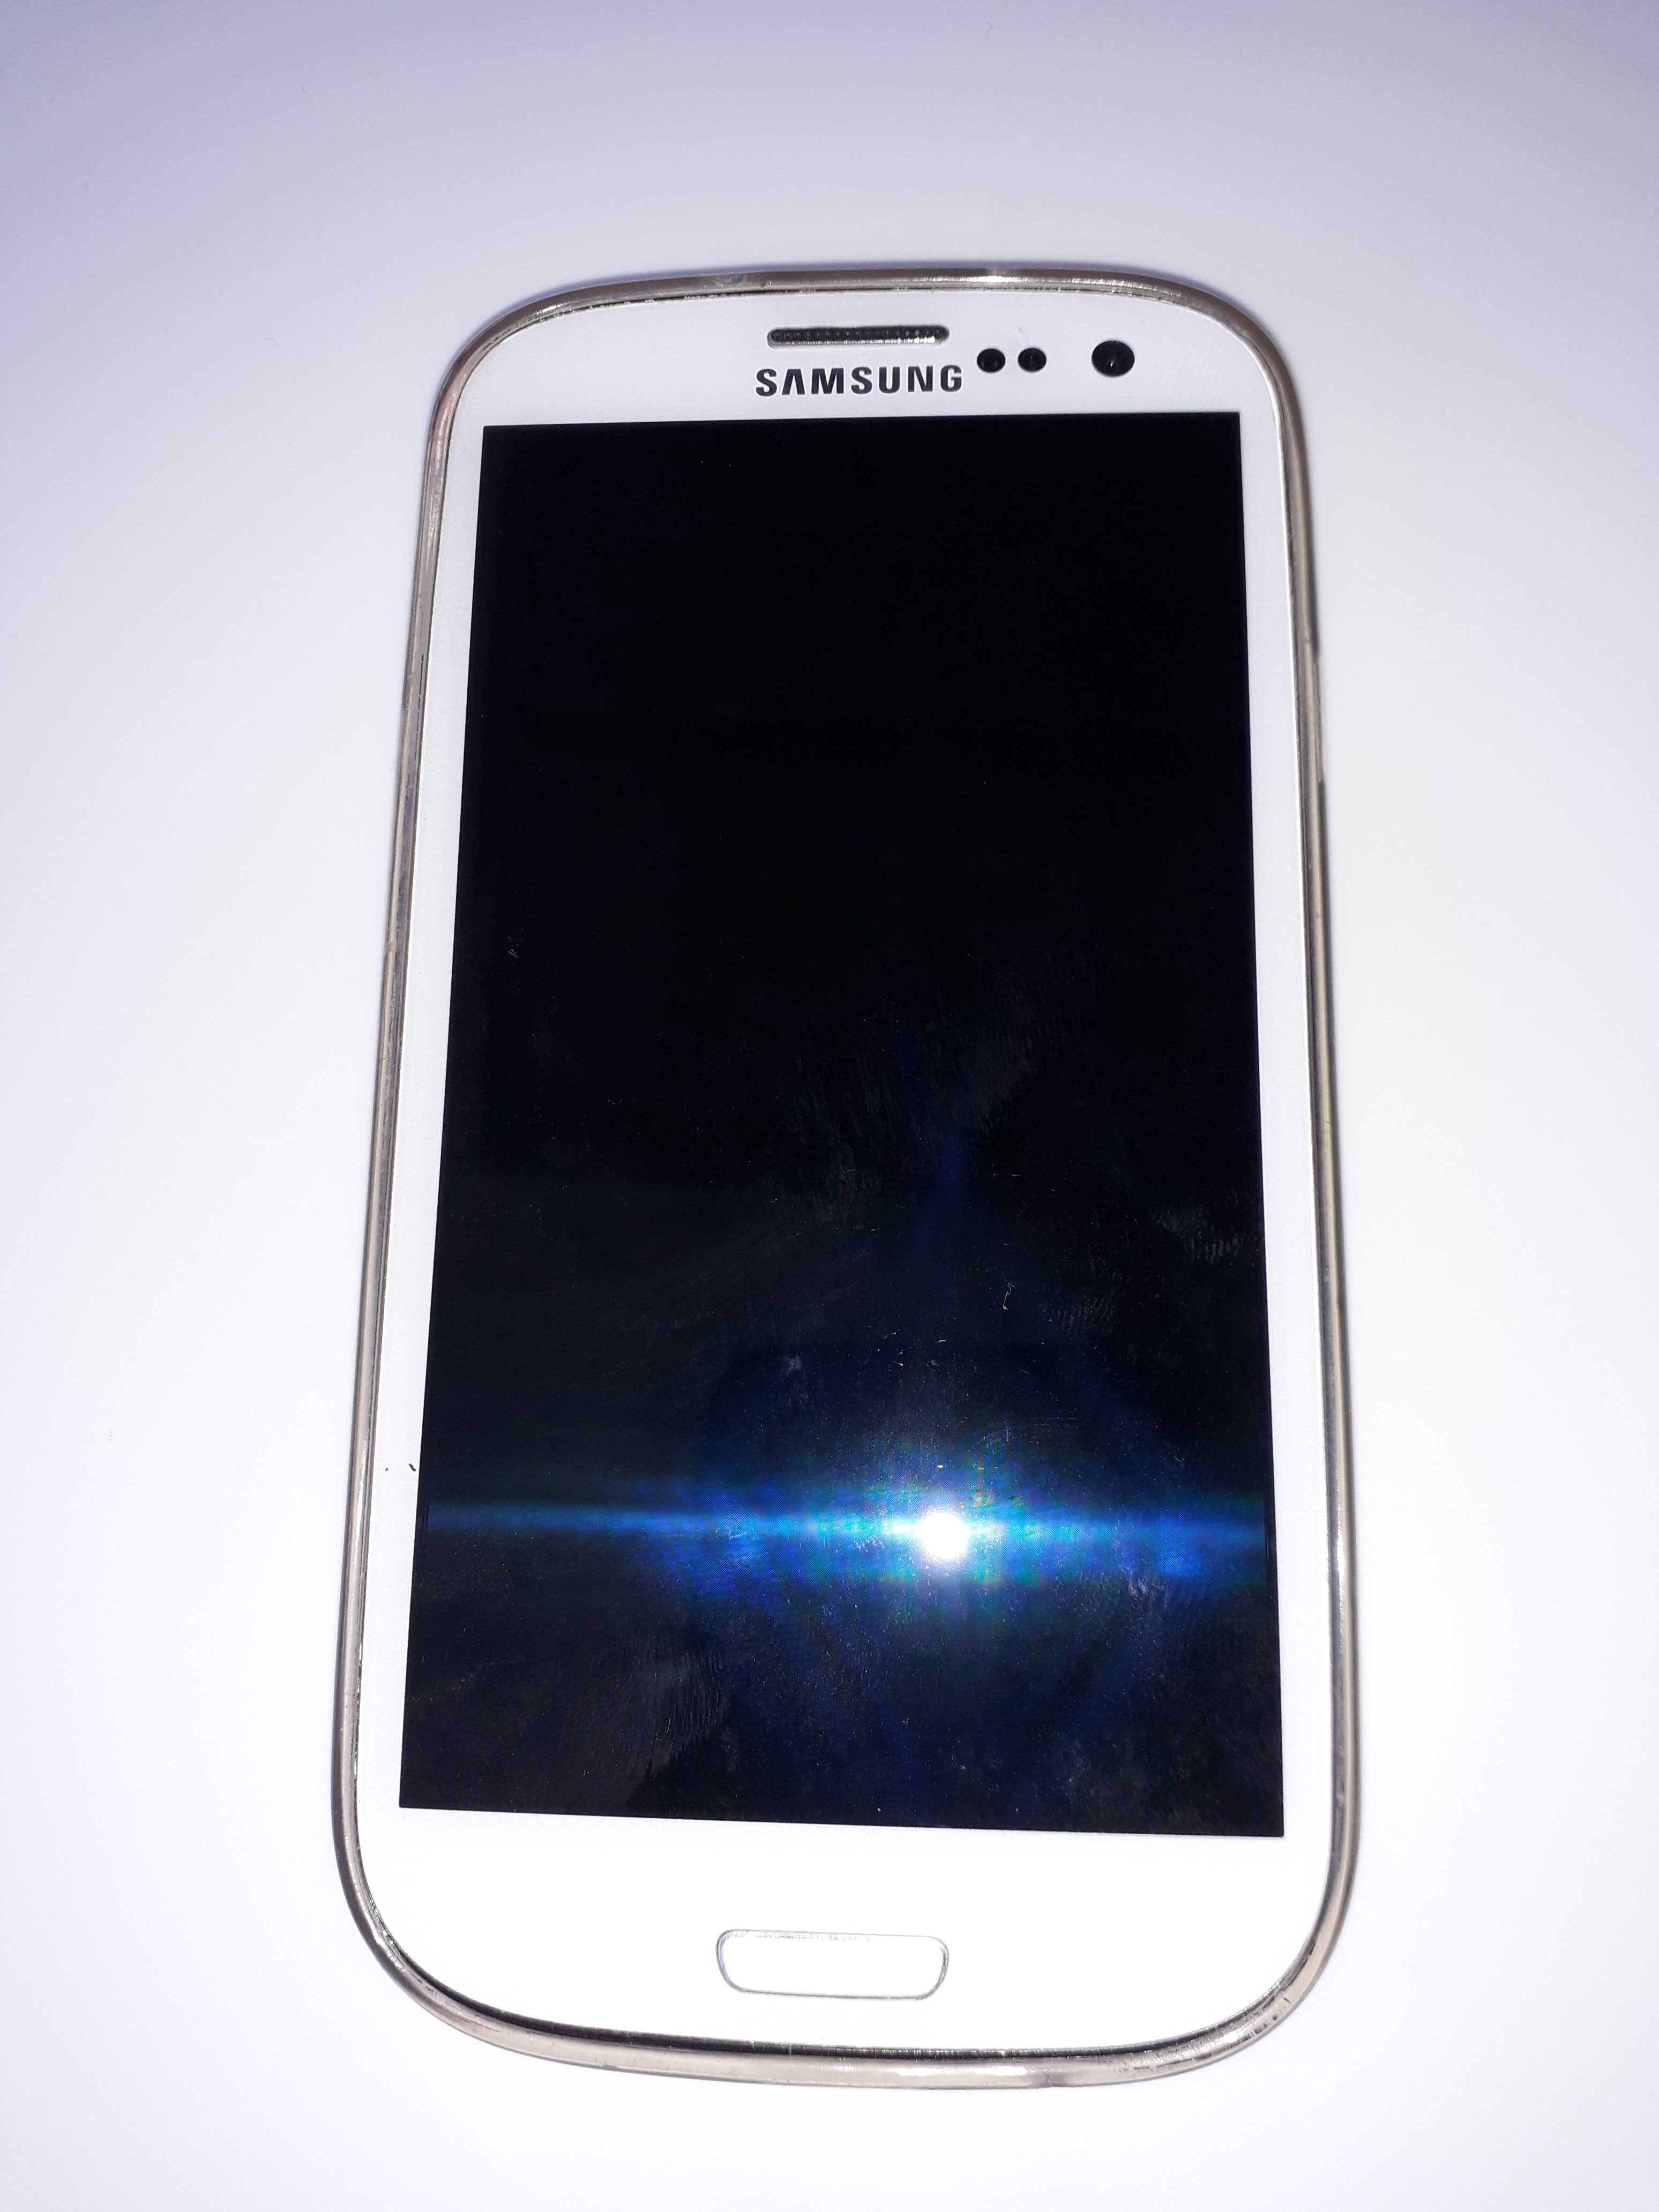 Samsung Galaxy S3 (Branco) usado - Modelo GT-I9300